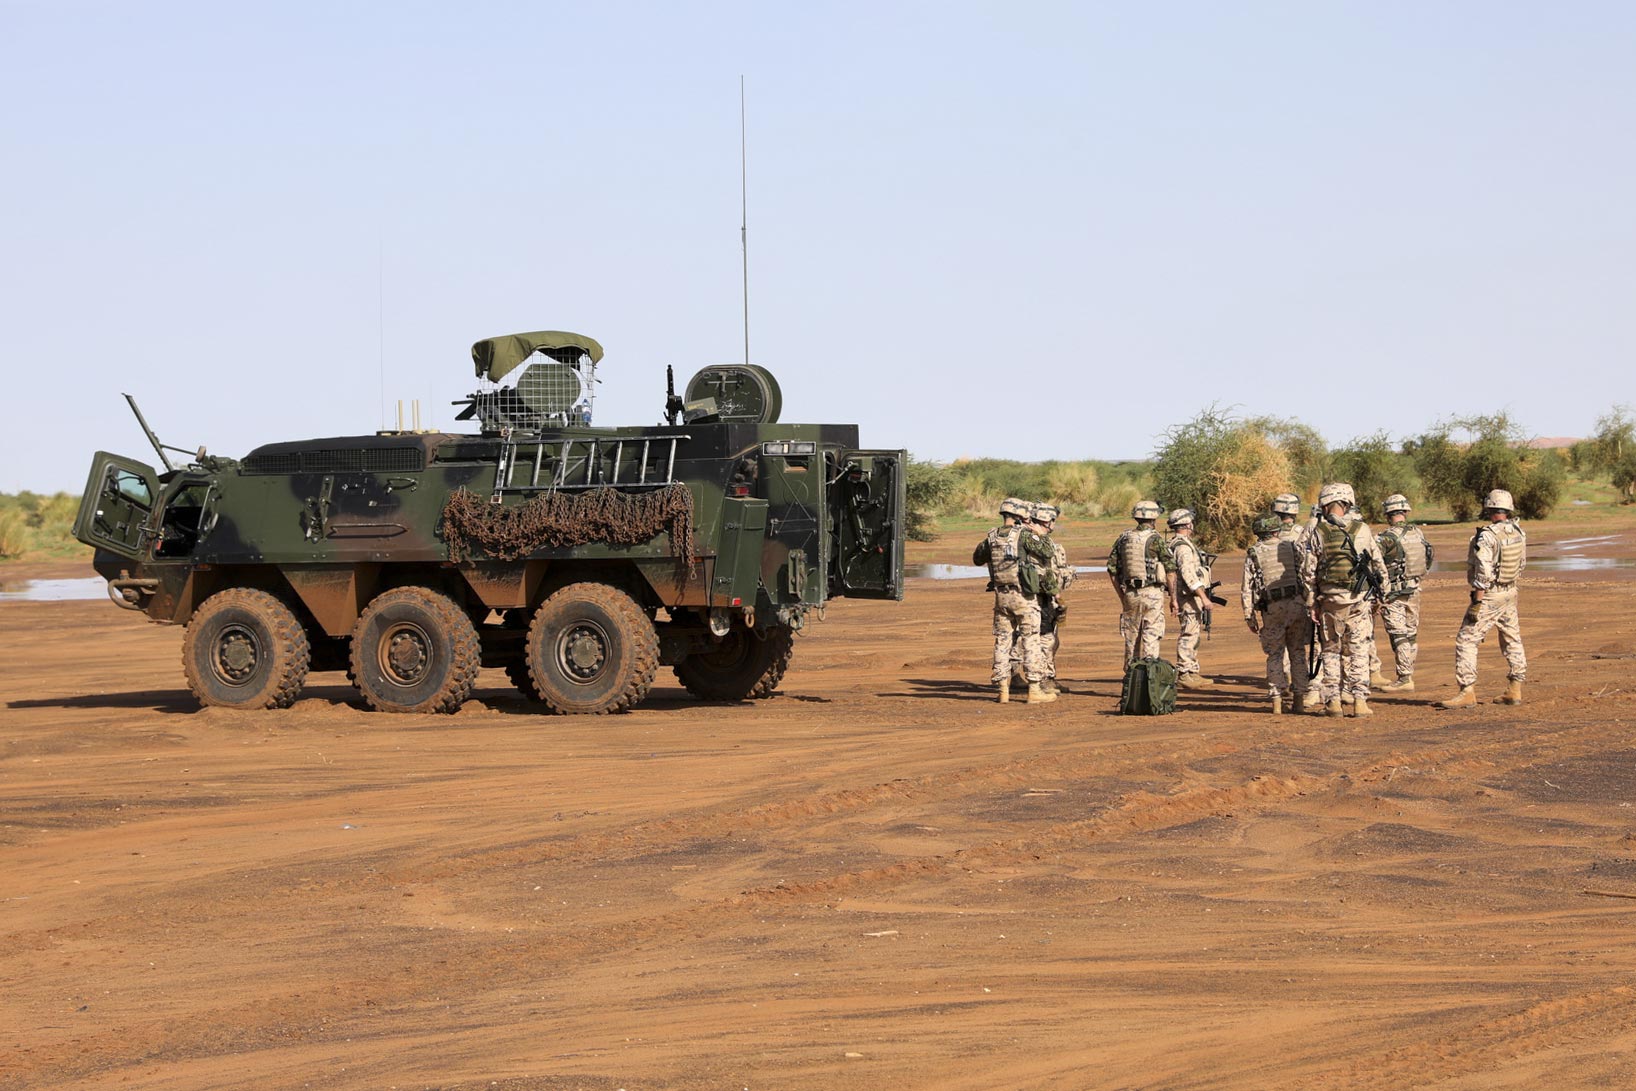 Estonian troops in Mali